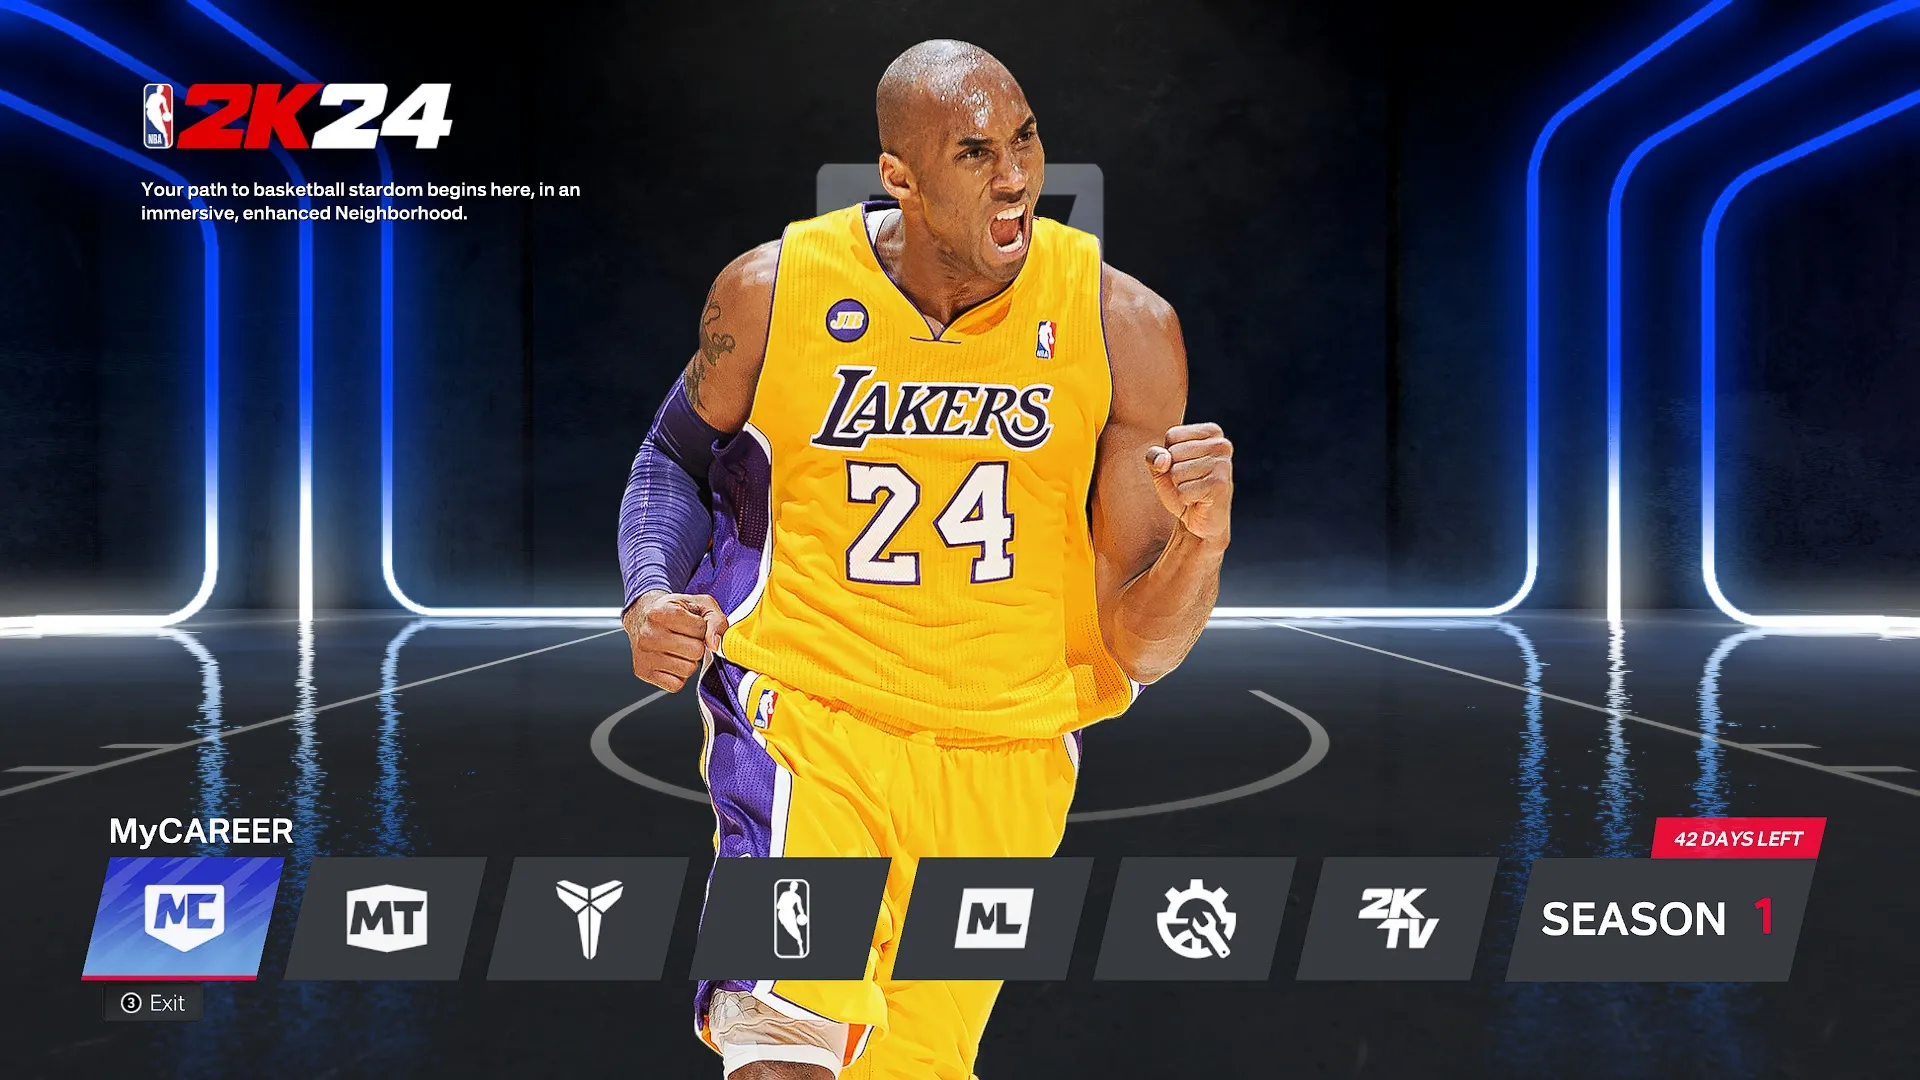 La schermata iniziale di NBA 2K24